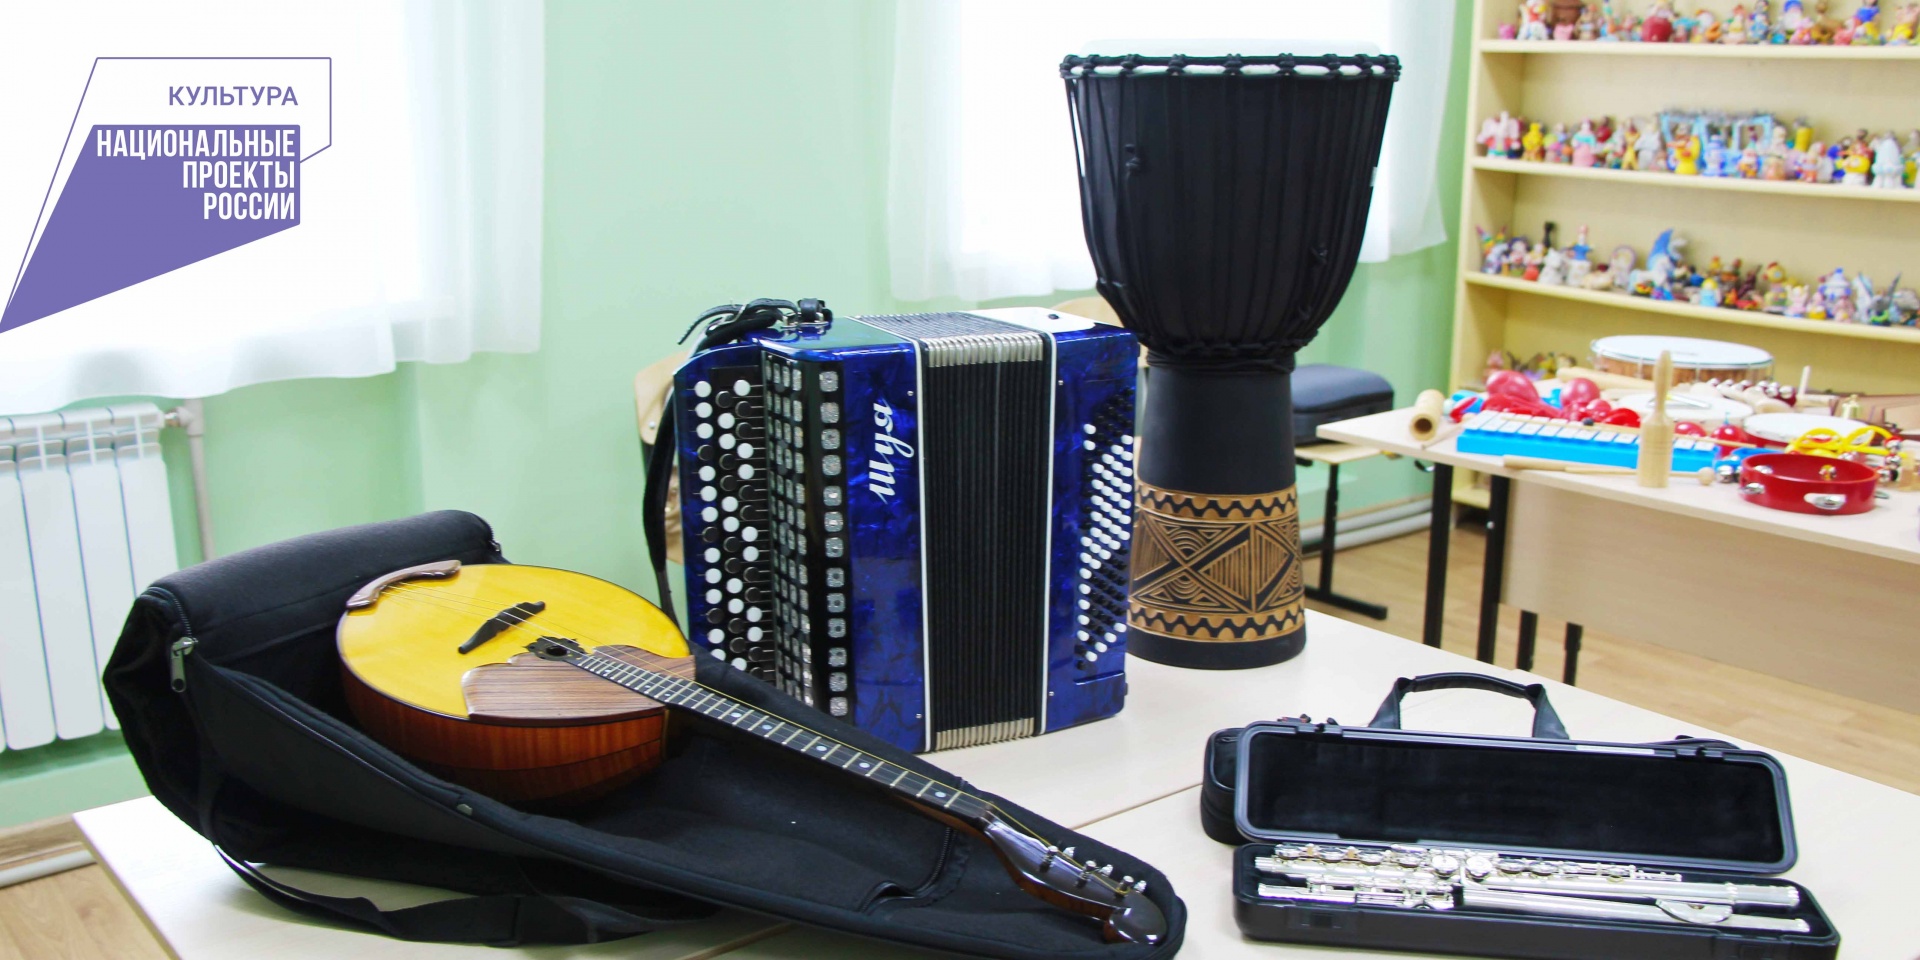 Новые музыкальные инструменты поступили в Пучежскую детскую школу искусств